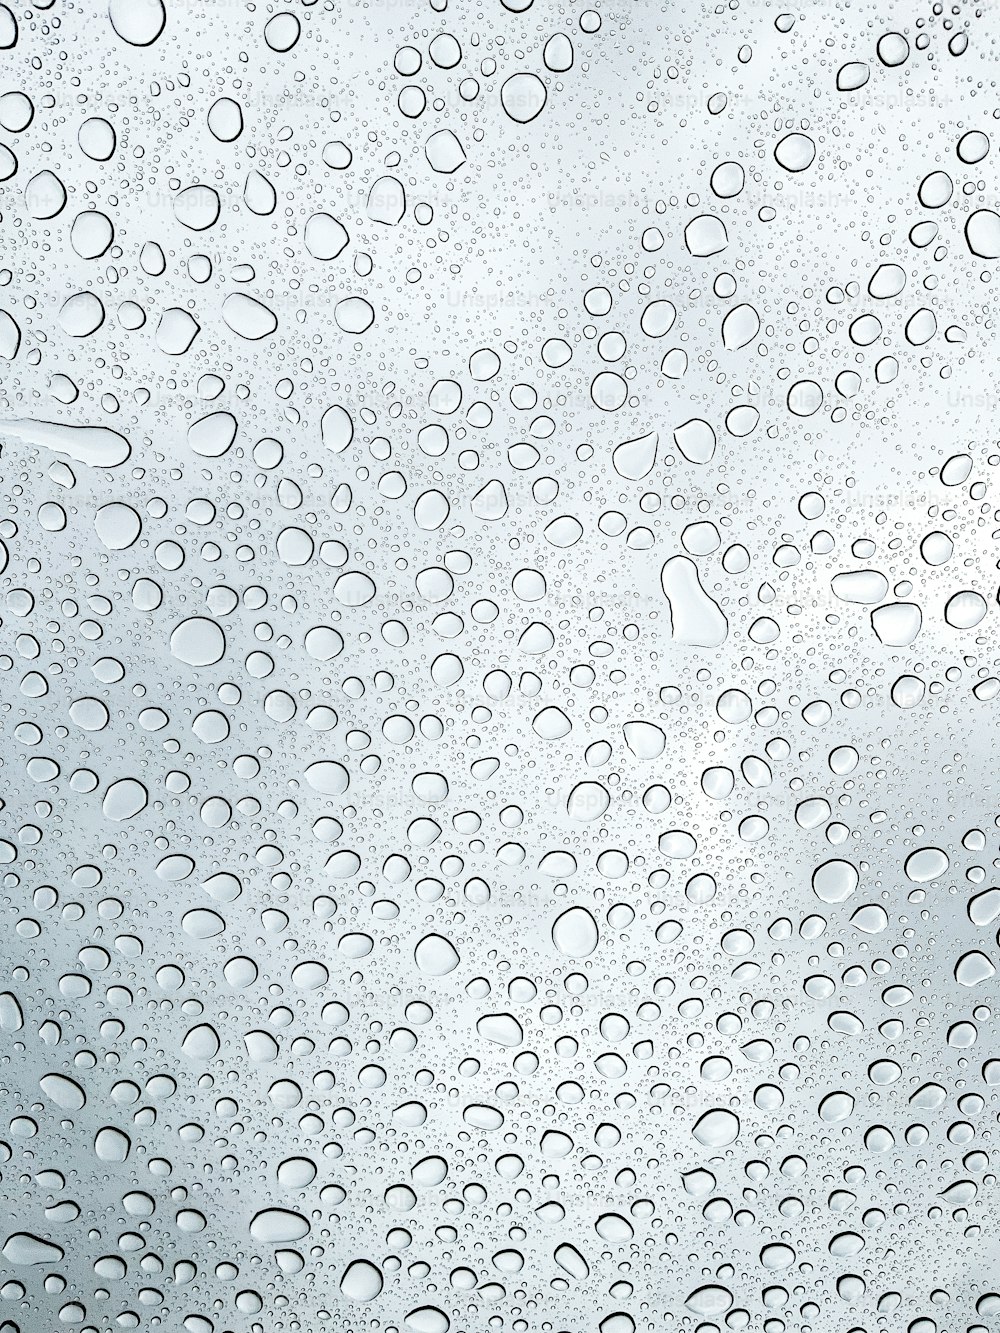 um close up de uma janela com gotas de água